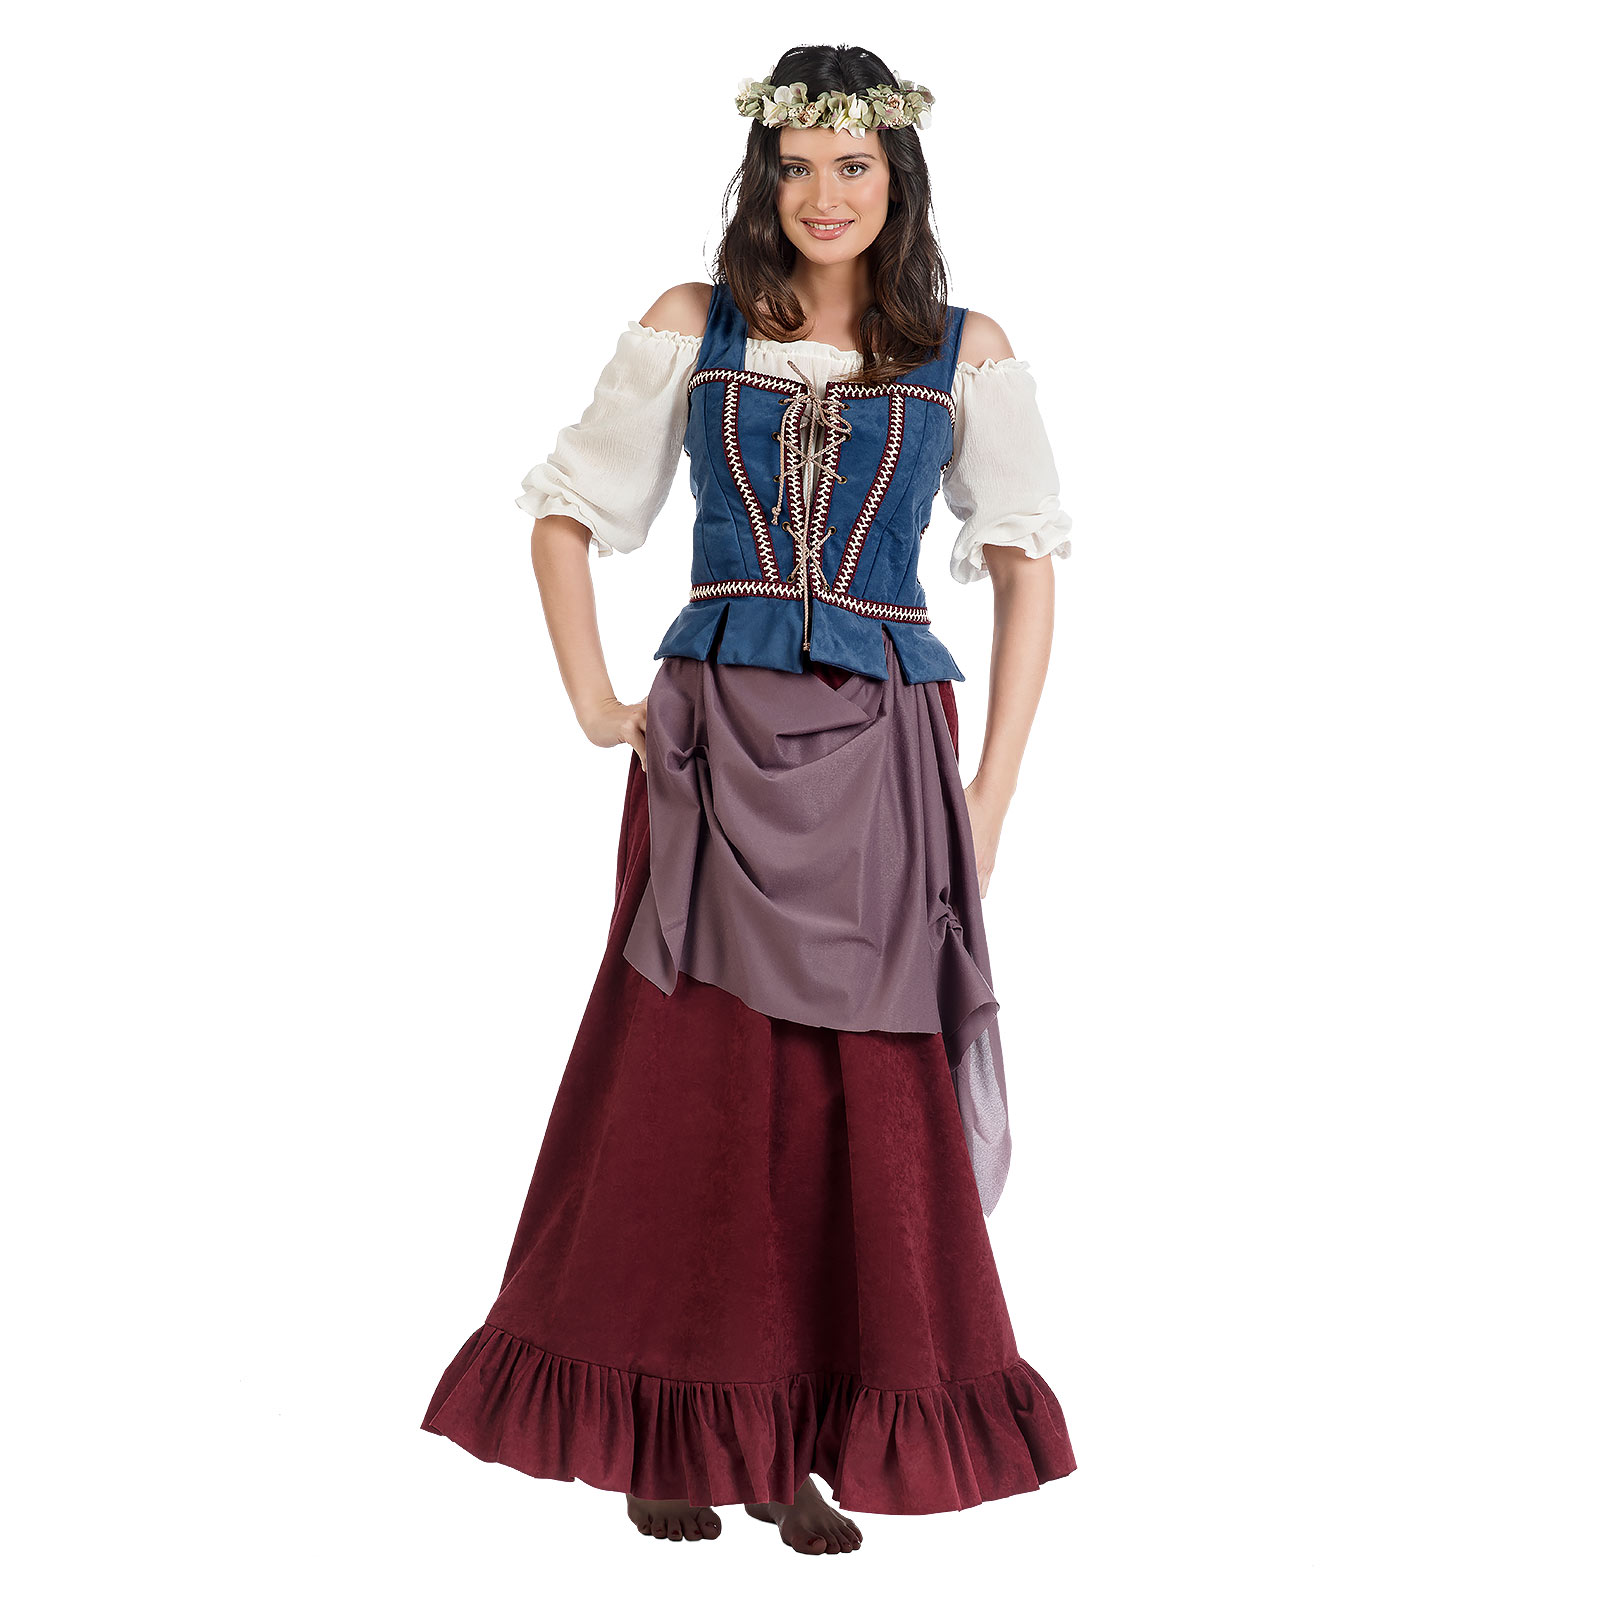 Mittelalter Magd Kostüm Damen